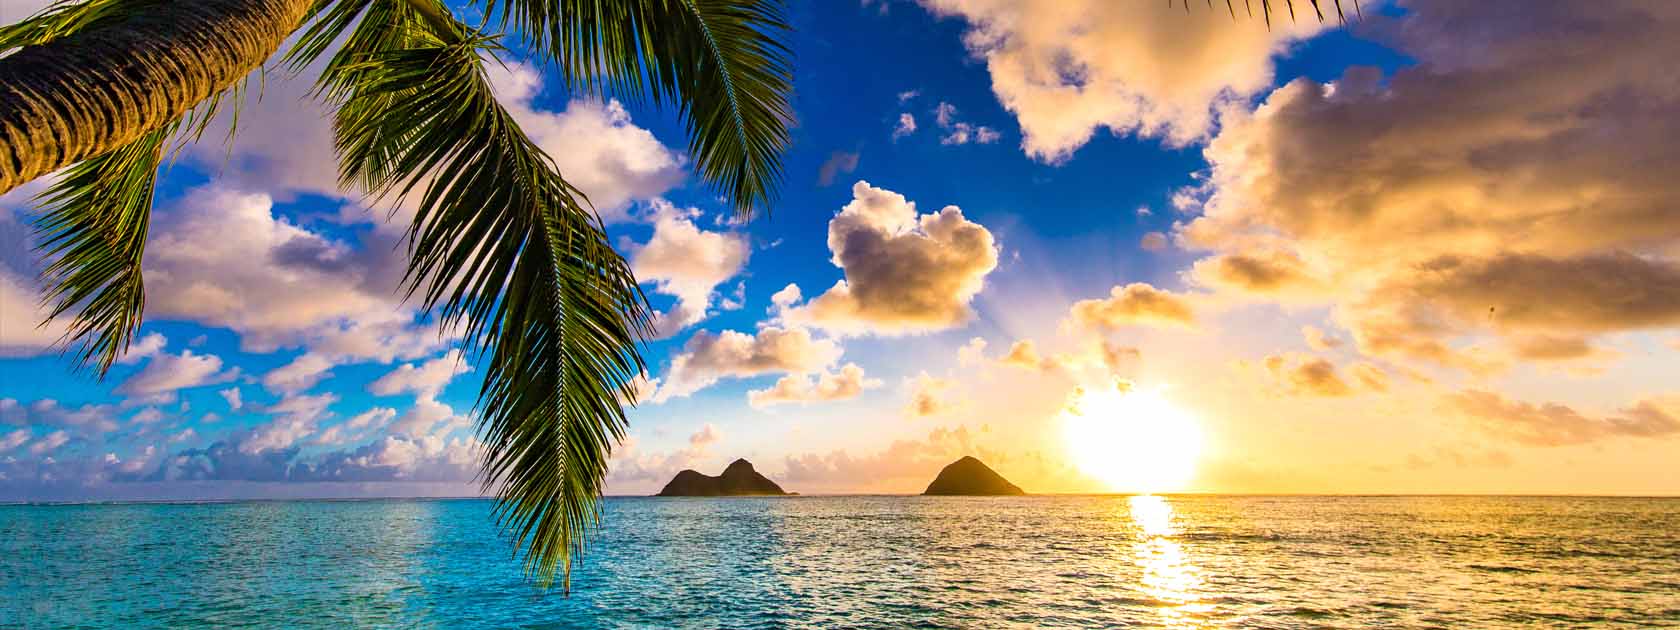 puesta de sol en el mar con palmeras y 2 islotes a lo lejos